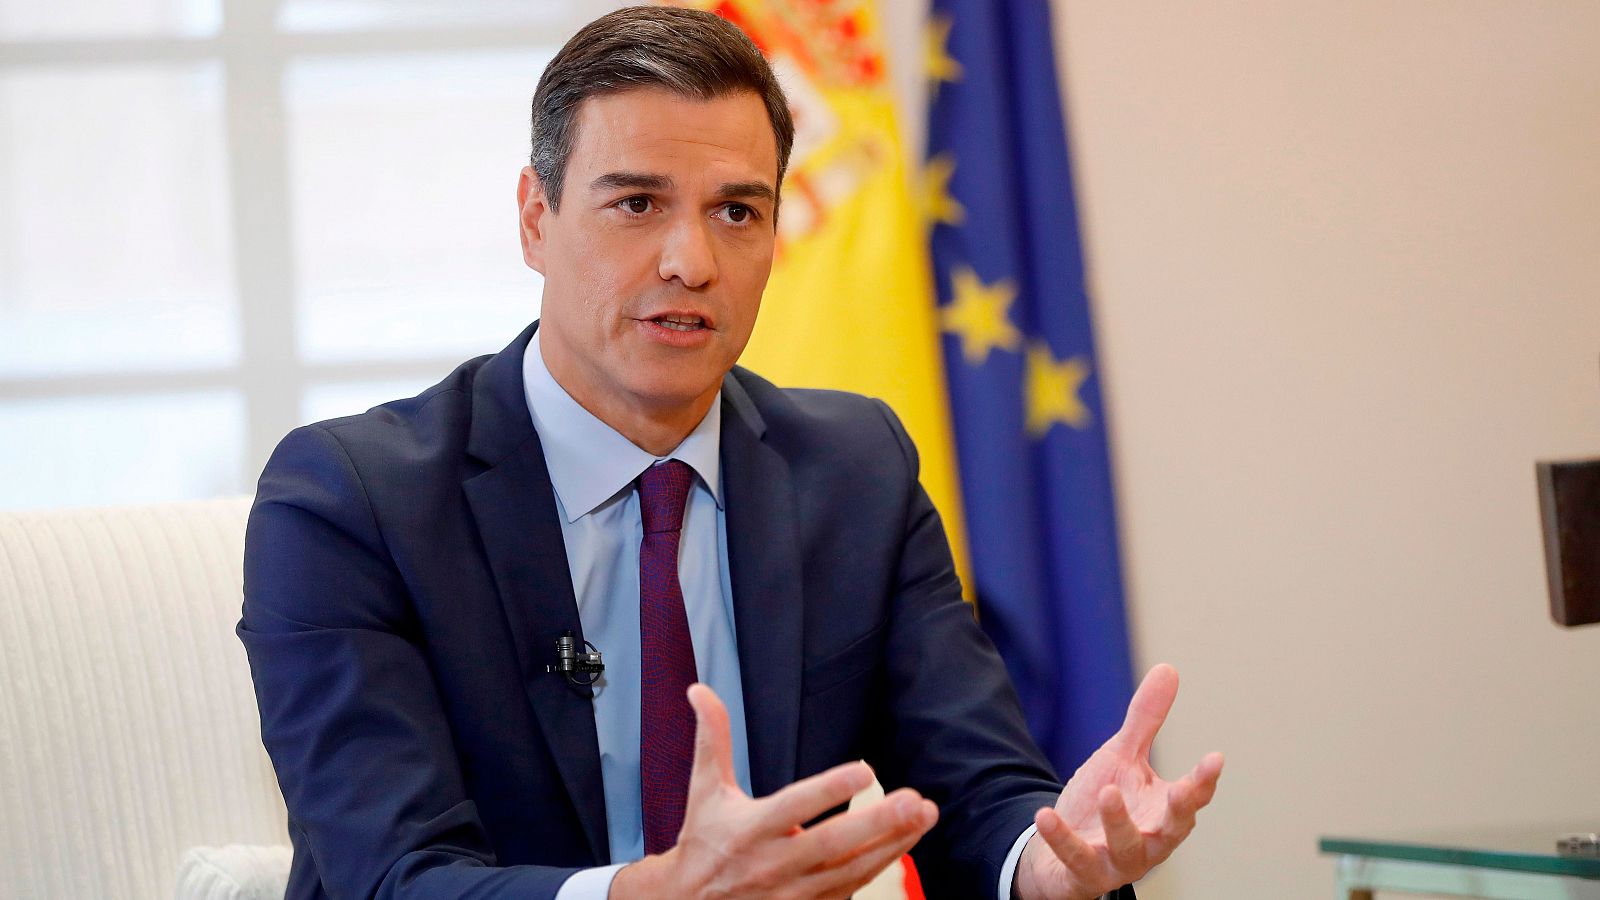 Presupuestos - Sánchez presentará este viernes los presupuestos que quiere negociar "con todas las fuerzas parlamentarias" - RTVE.es